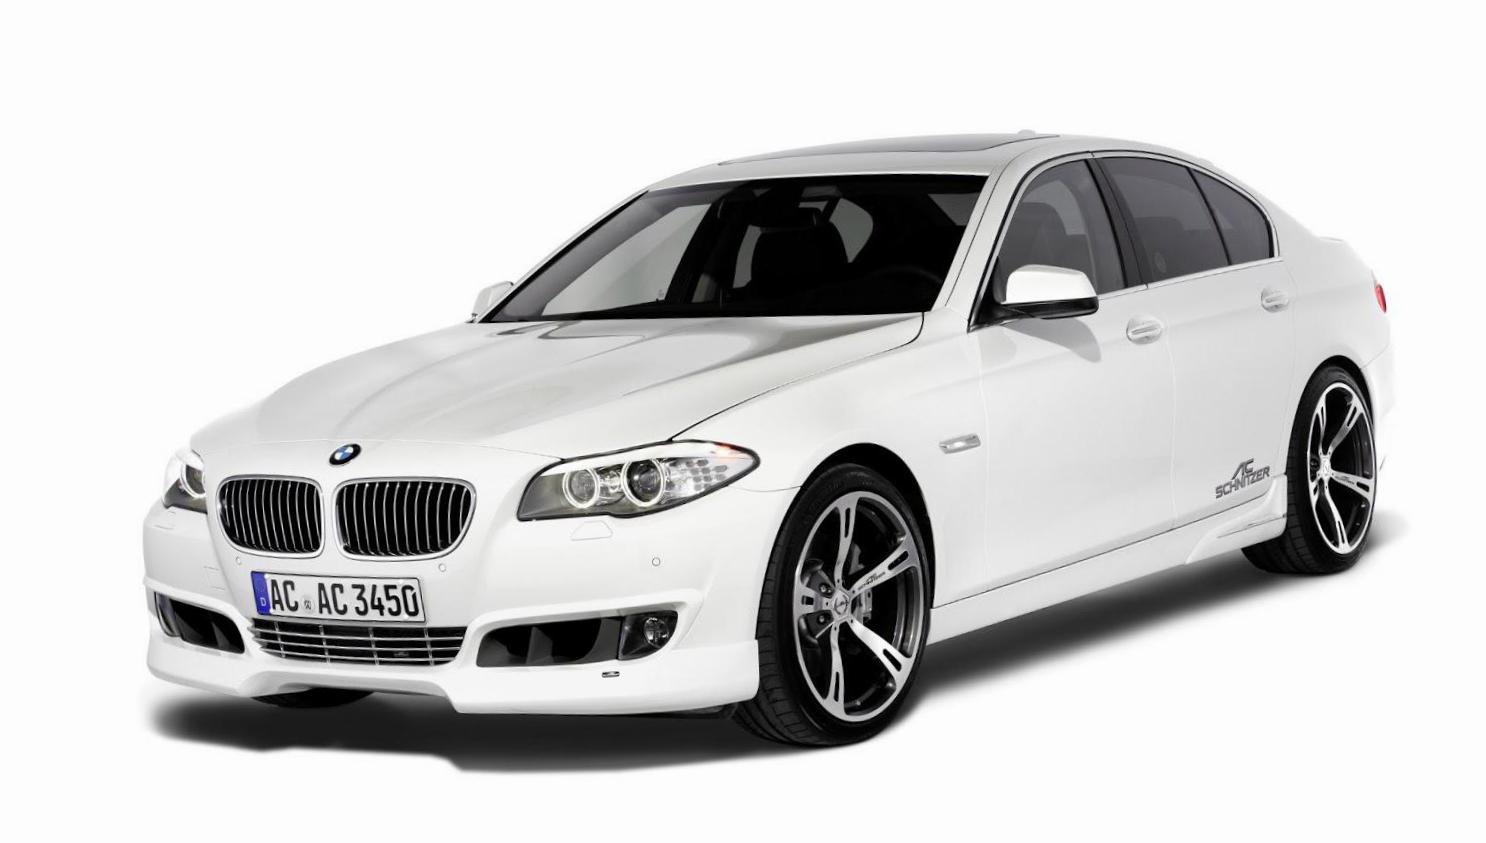 5 Series Sedan (F10) BMW price 2010